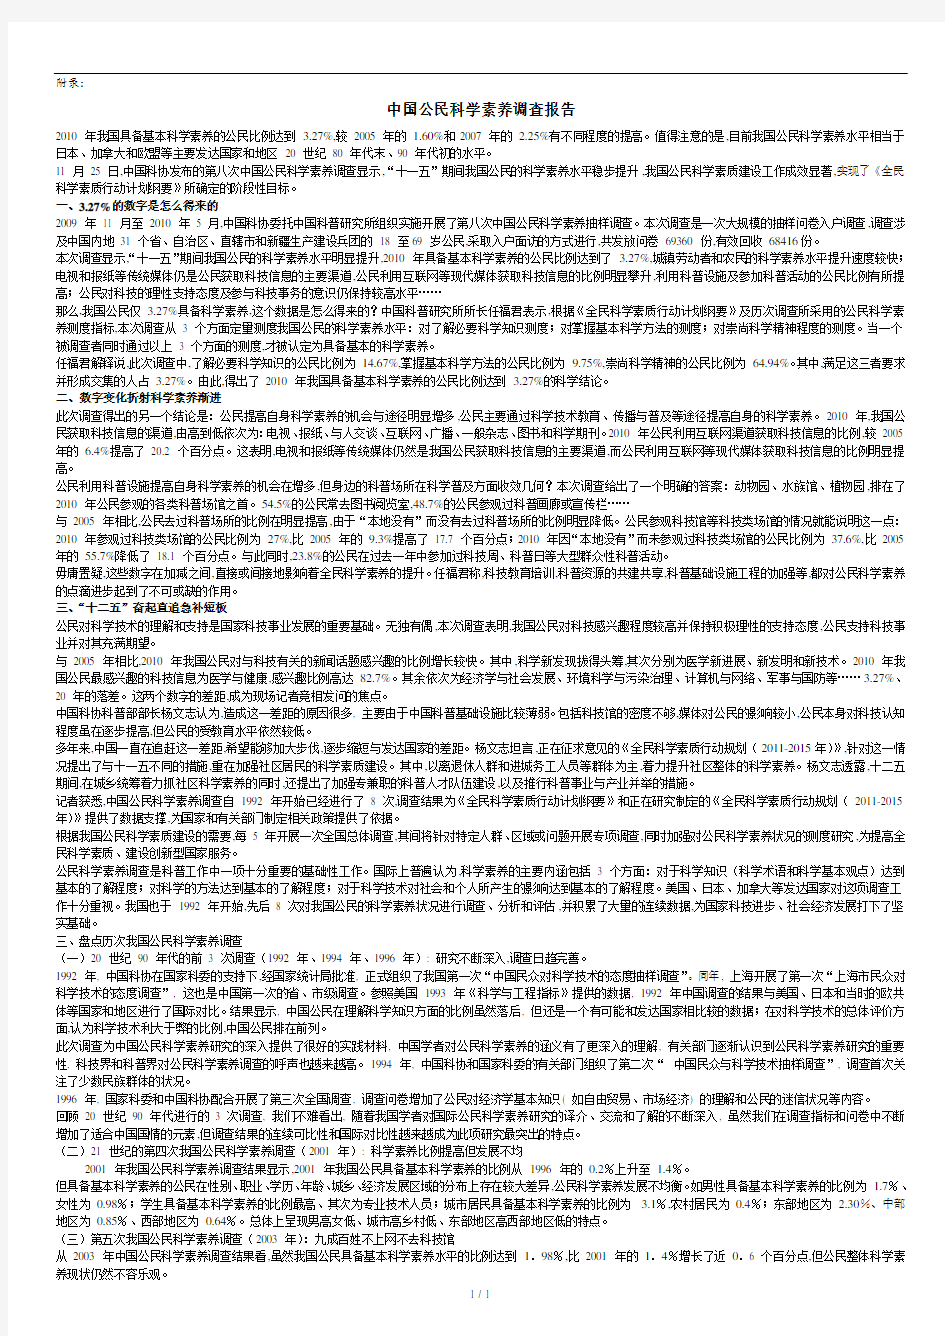 中国公民科学素养调查报告.doc